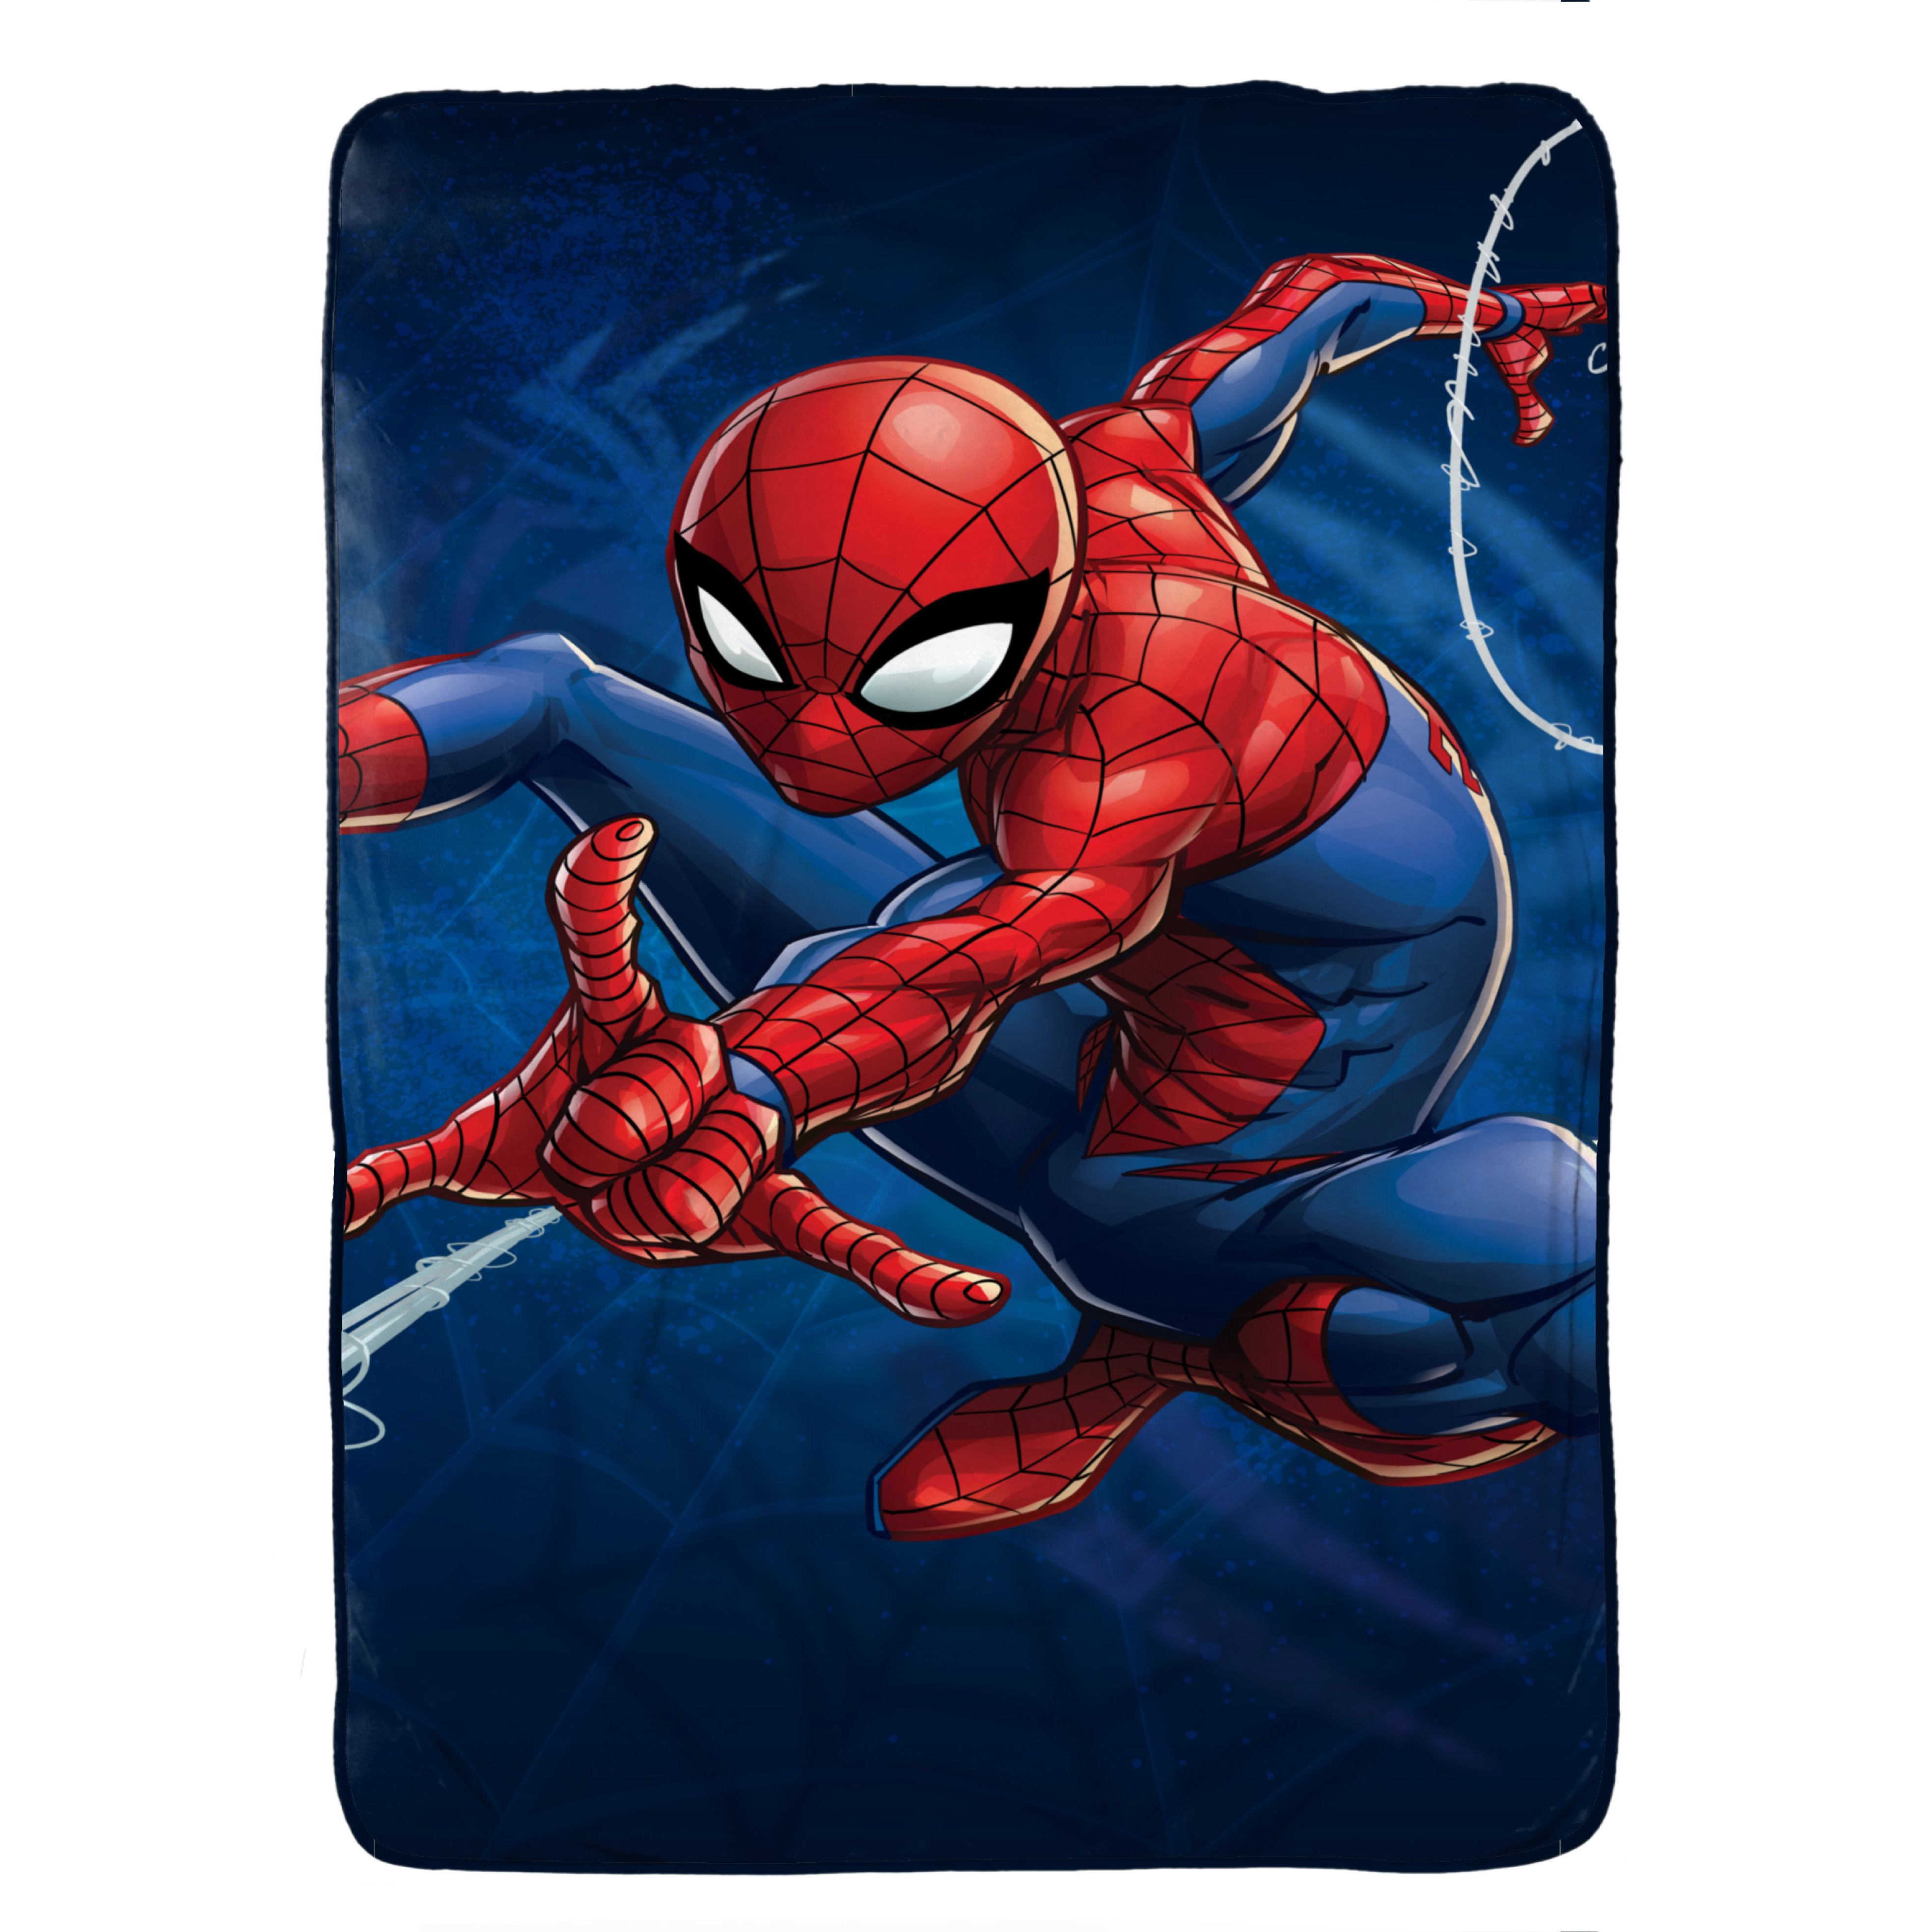 Mền ( Chăn ) tiện dụng hình người nhện - Spider Man Stripes Plush